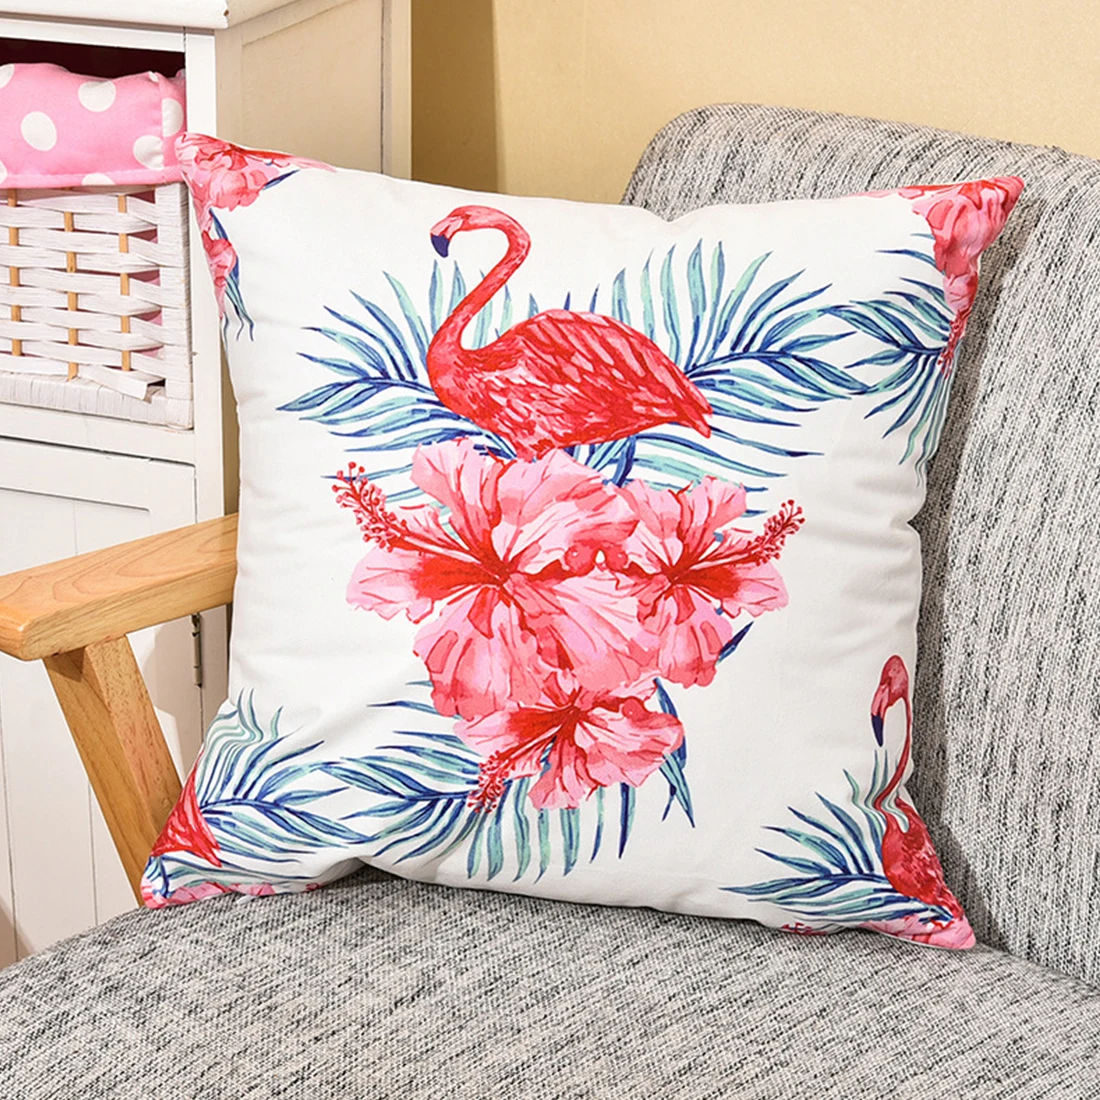 Фламинго наволочки 45*45 см Nordic стиль дома Декоративные Чехлы для подушек офис автомобиль диван  Декоративная наволочка